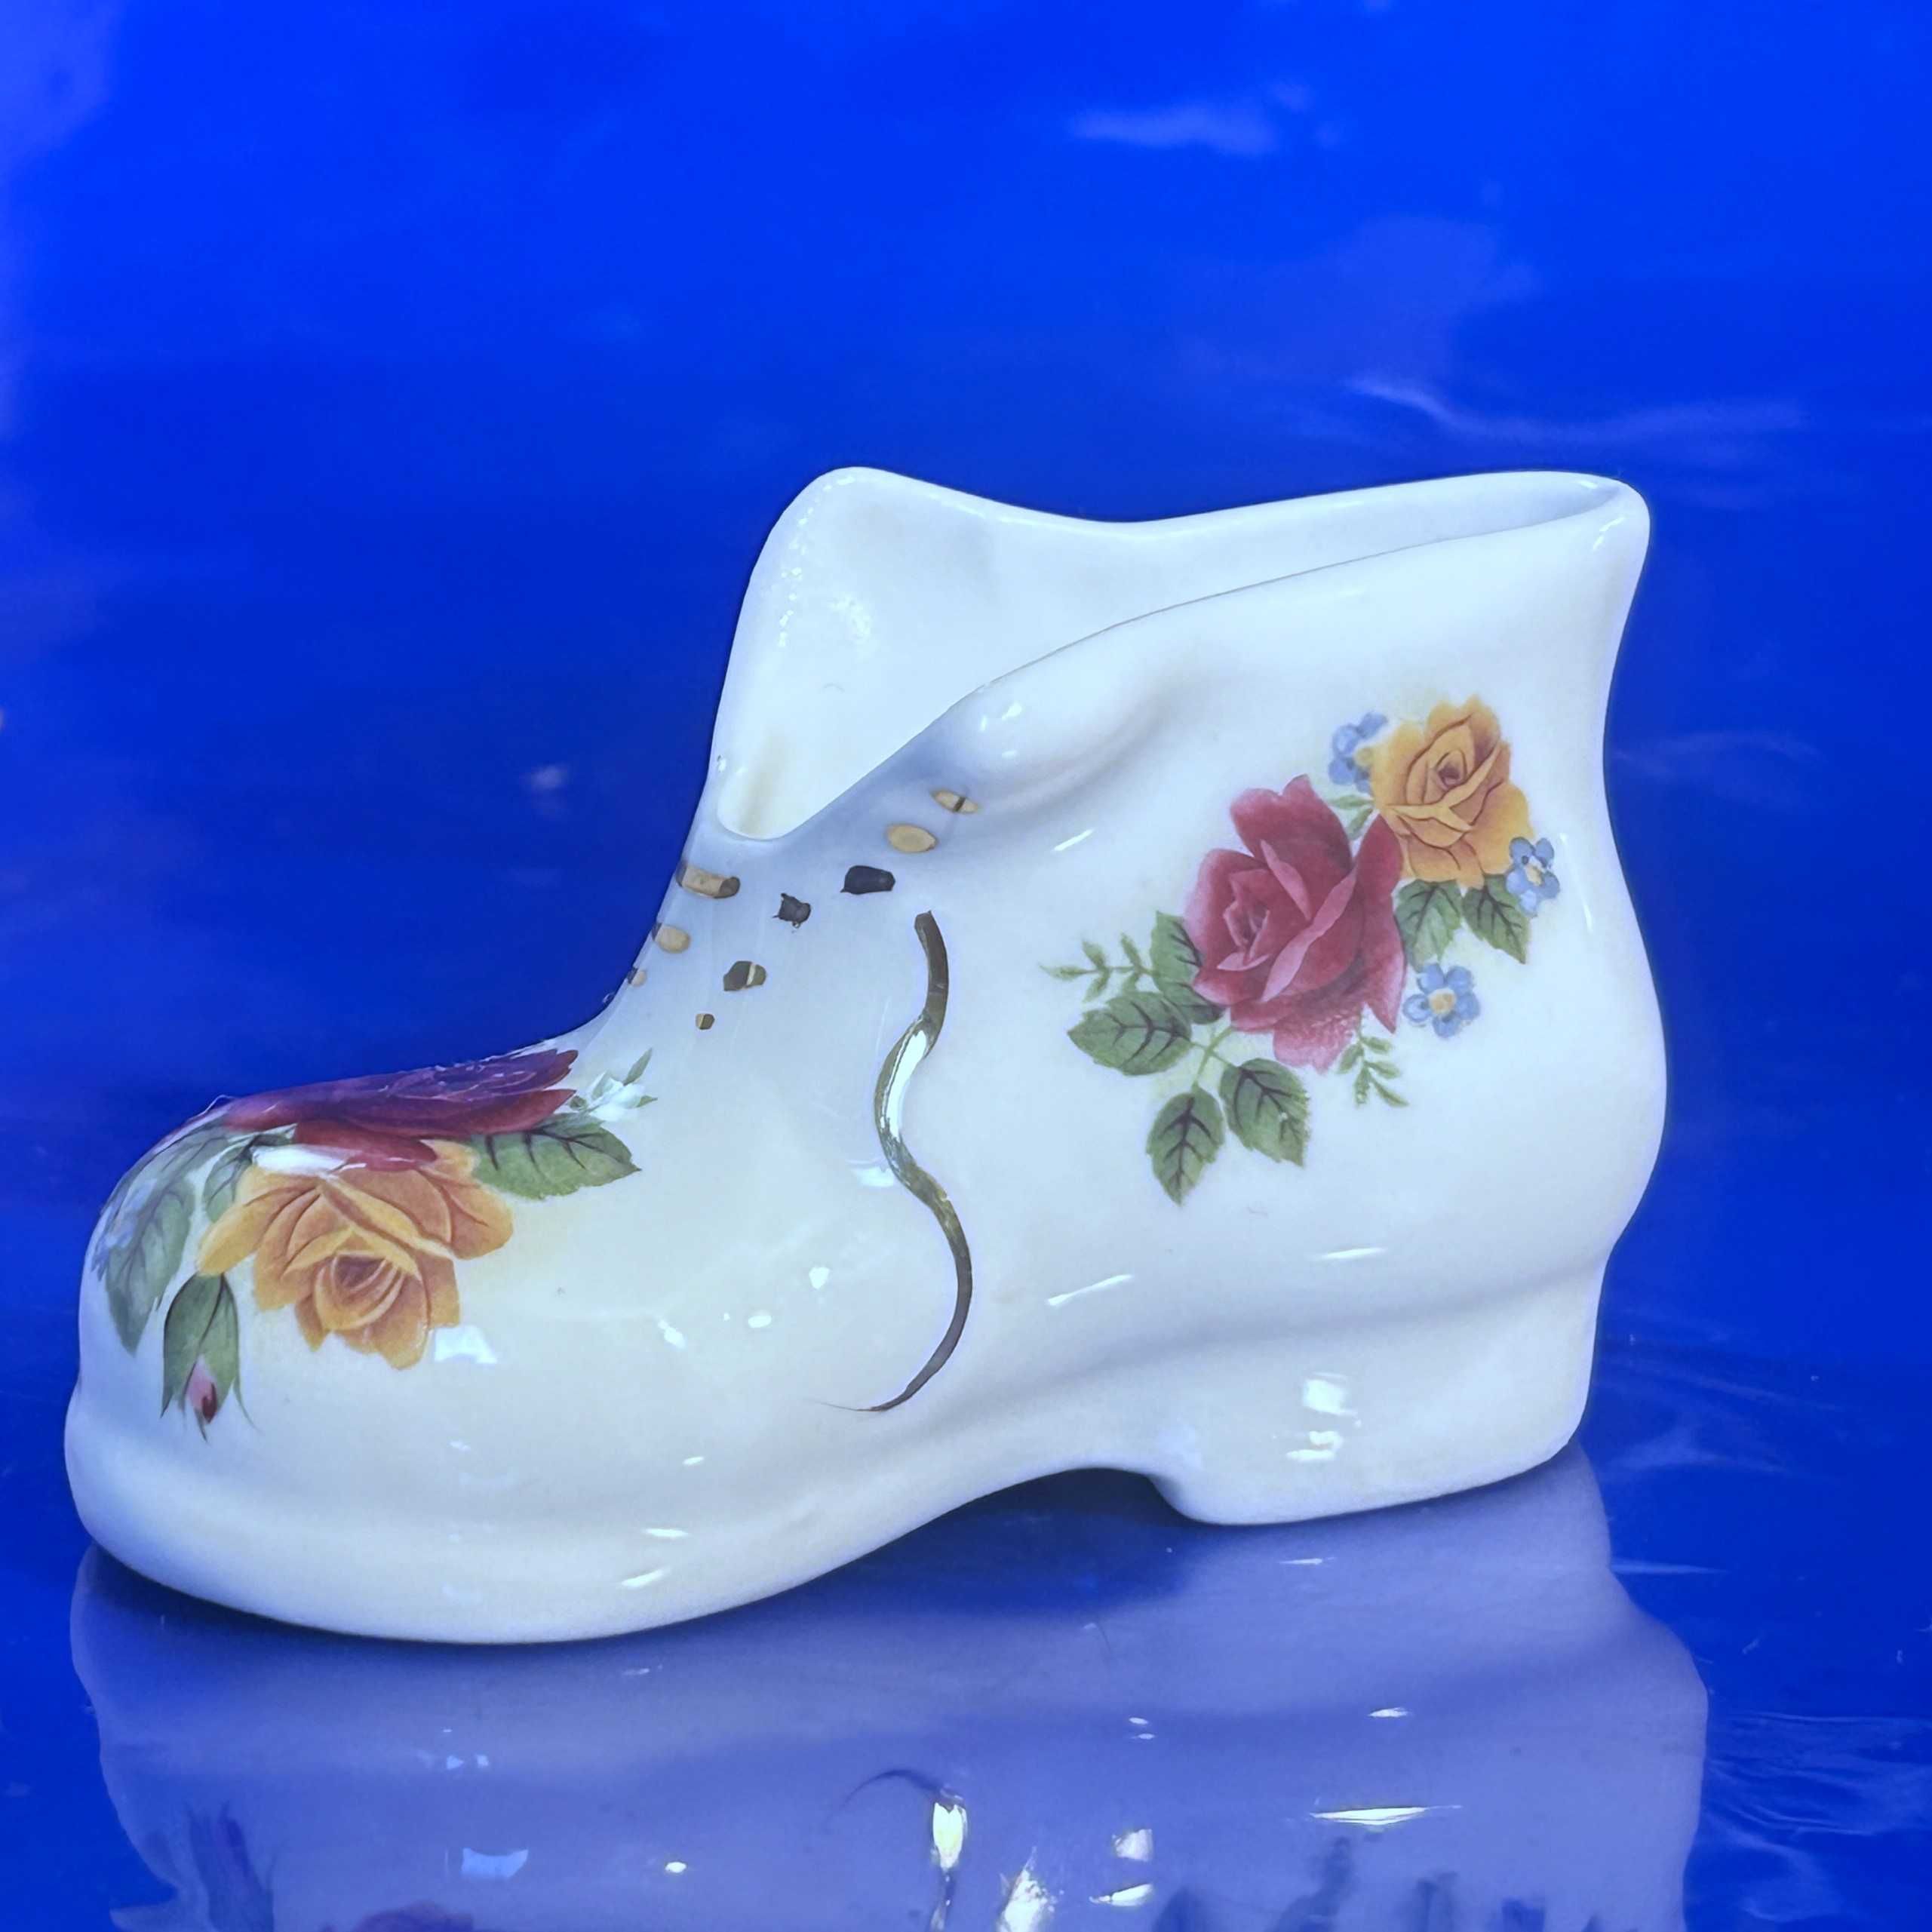 Bucik z wzorem kwiatowym. Porcelana kostna, marki Peter Gosling